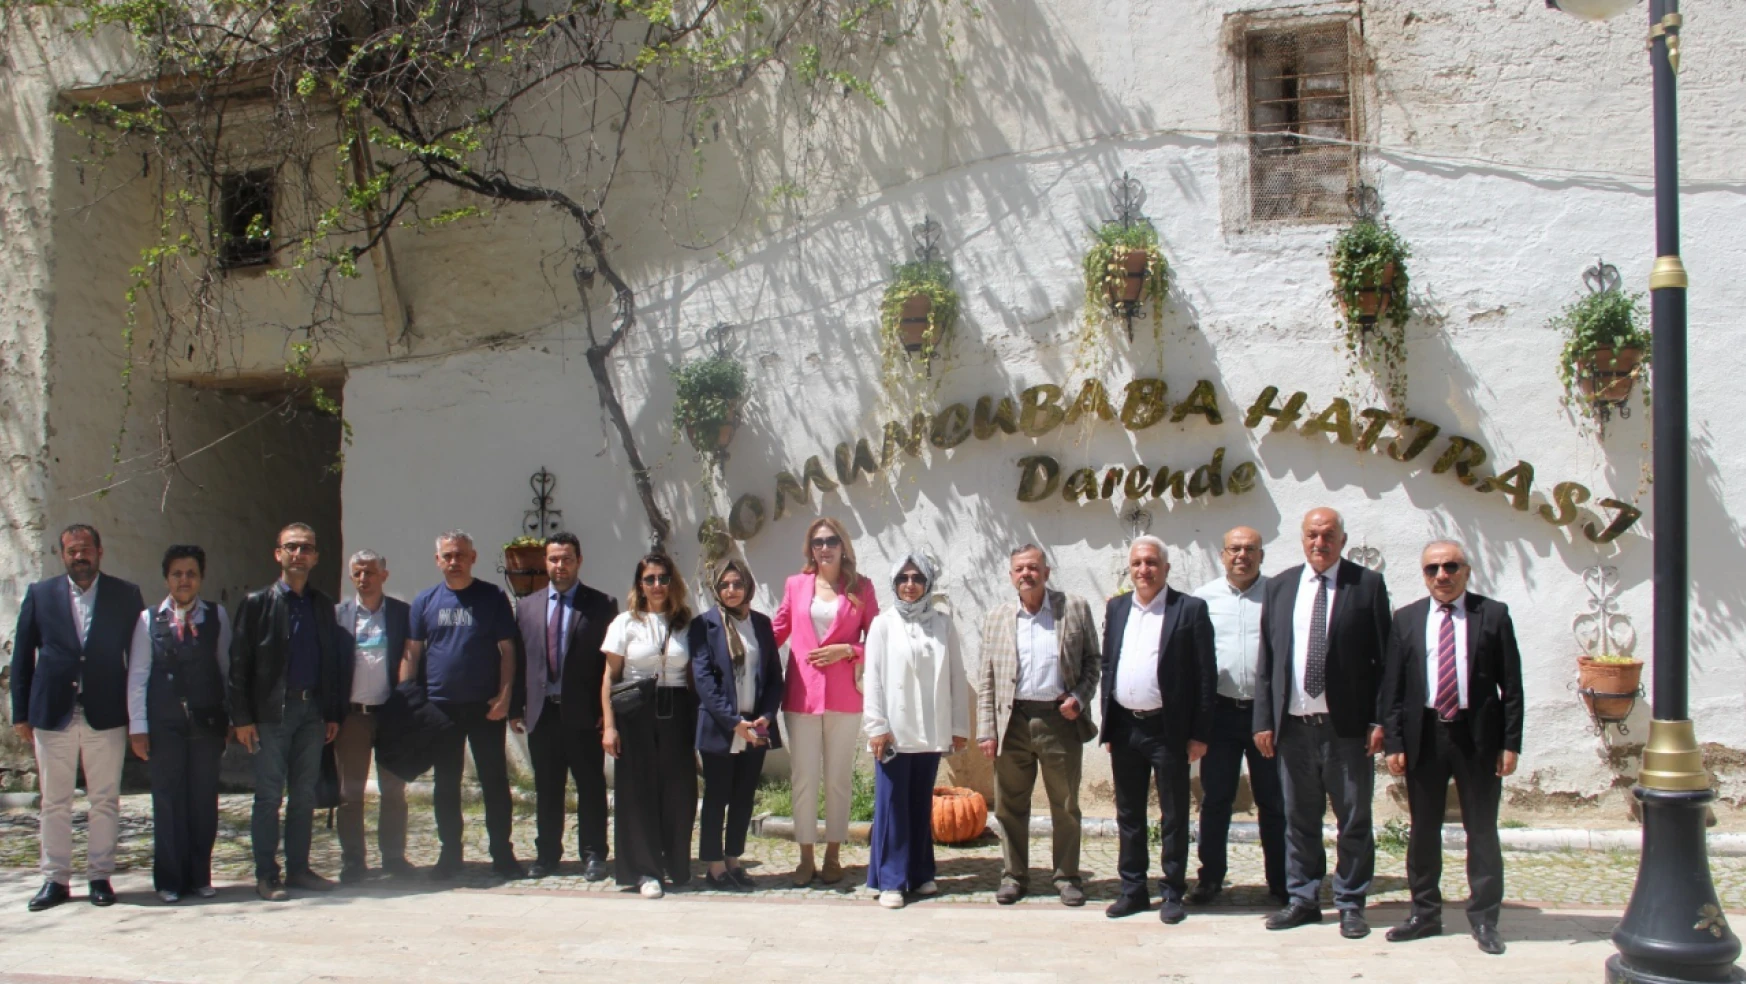 Turizm Haftası etkinlikleri çerçevesinde Malatya'nın Darende ilçesine gezi yapıldı